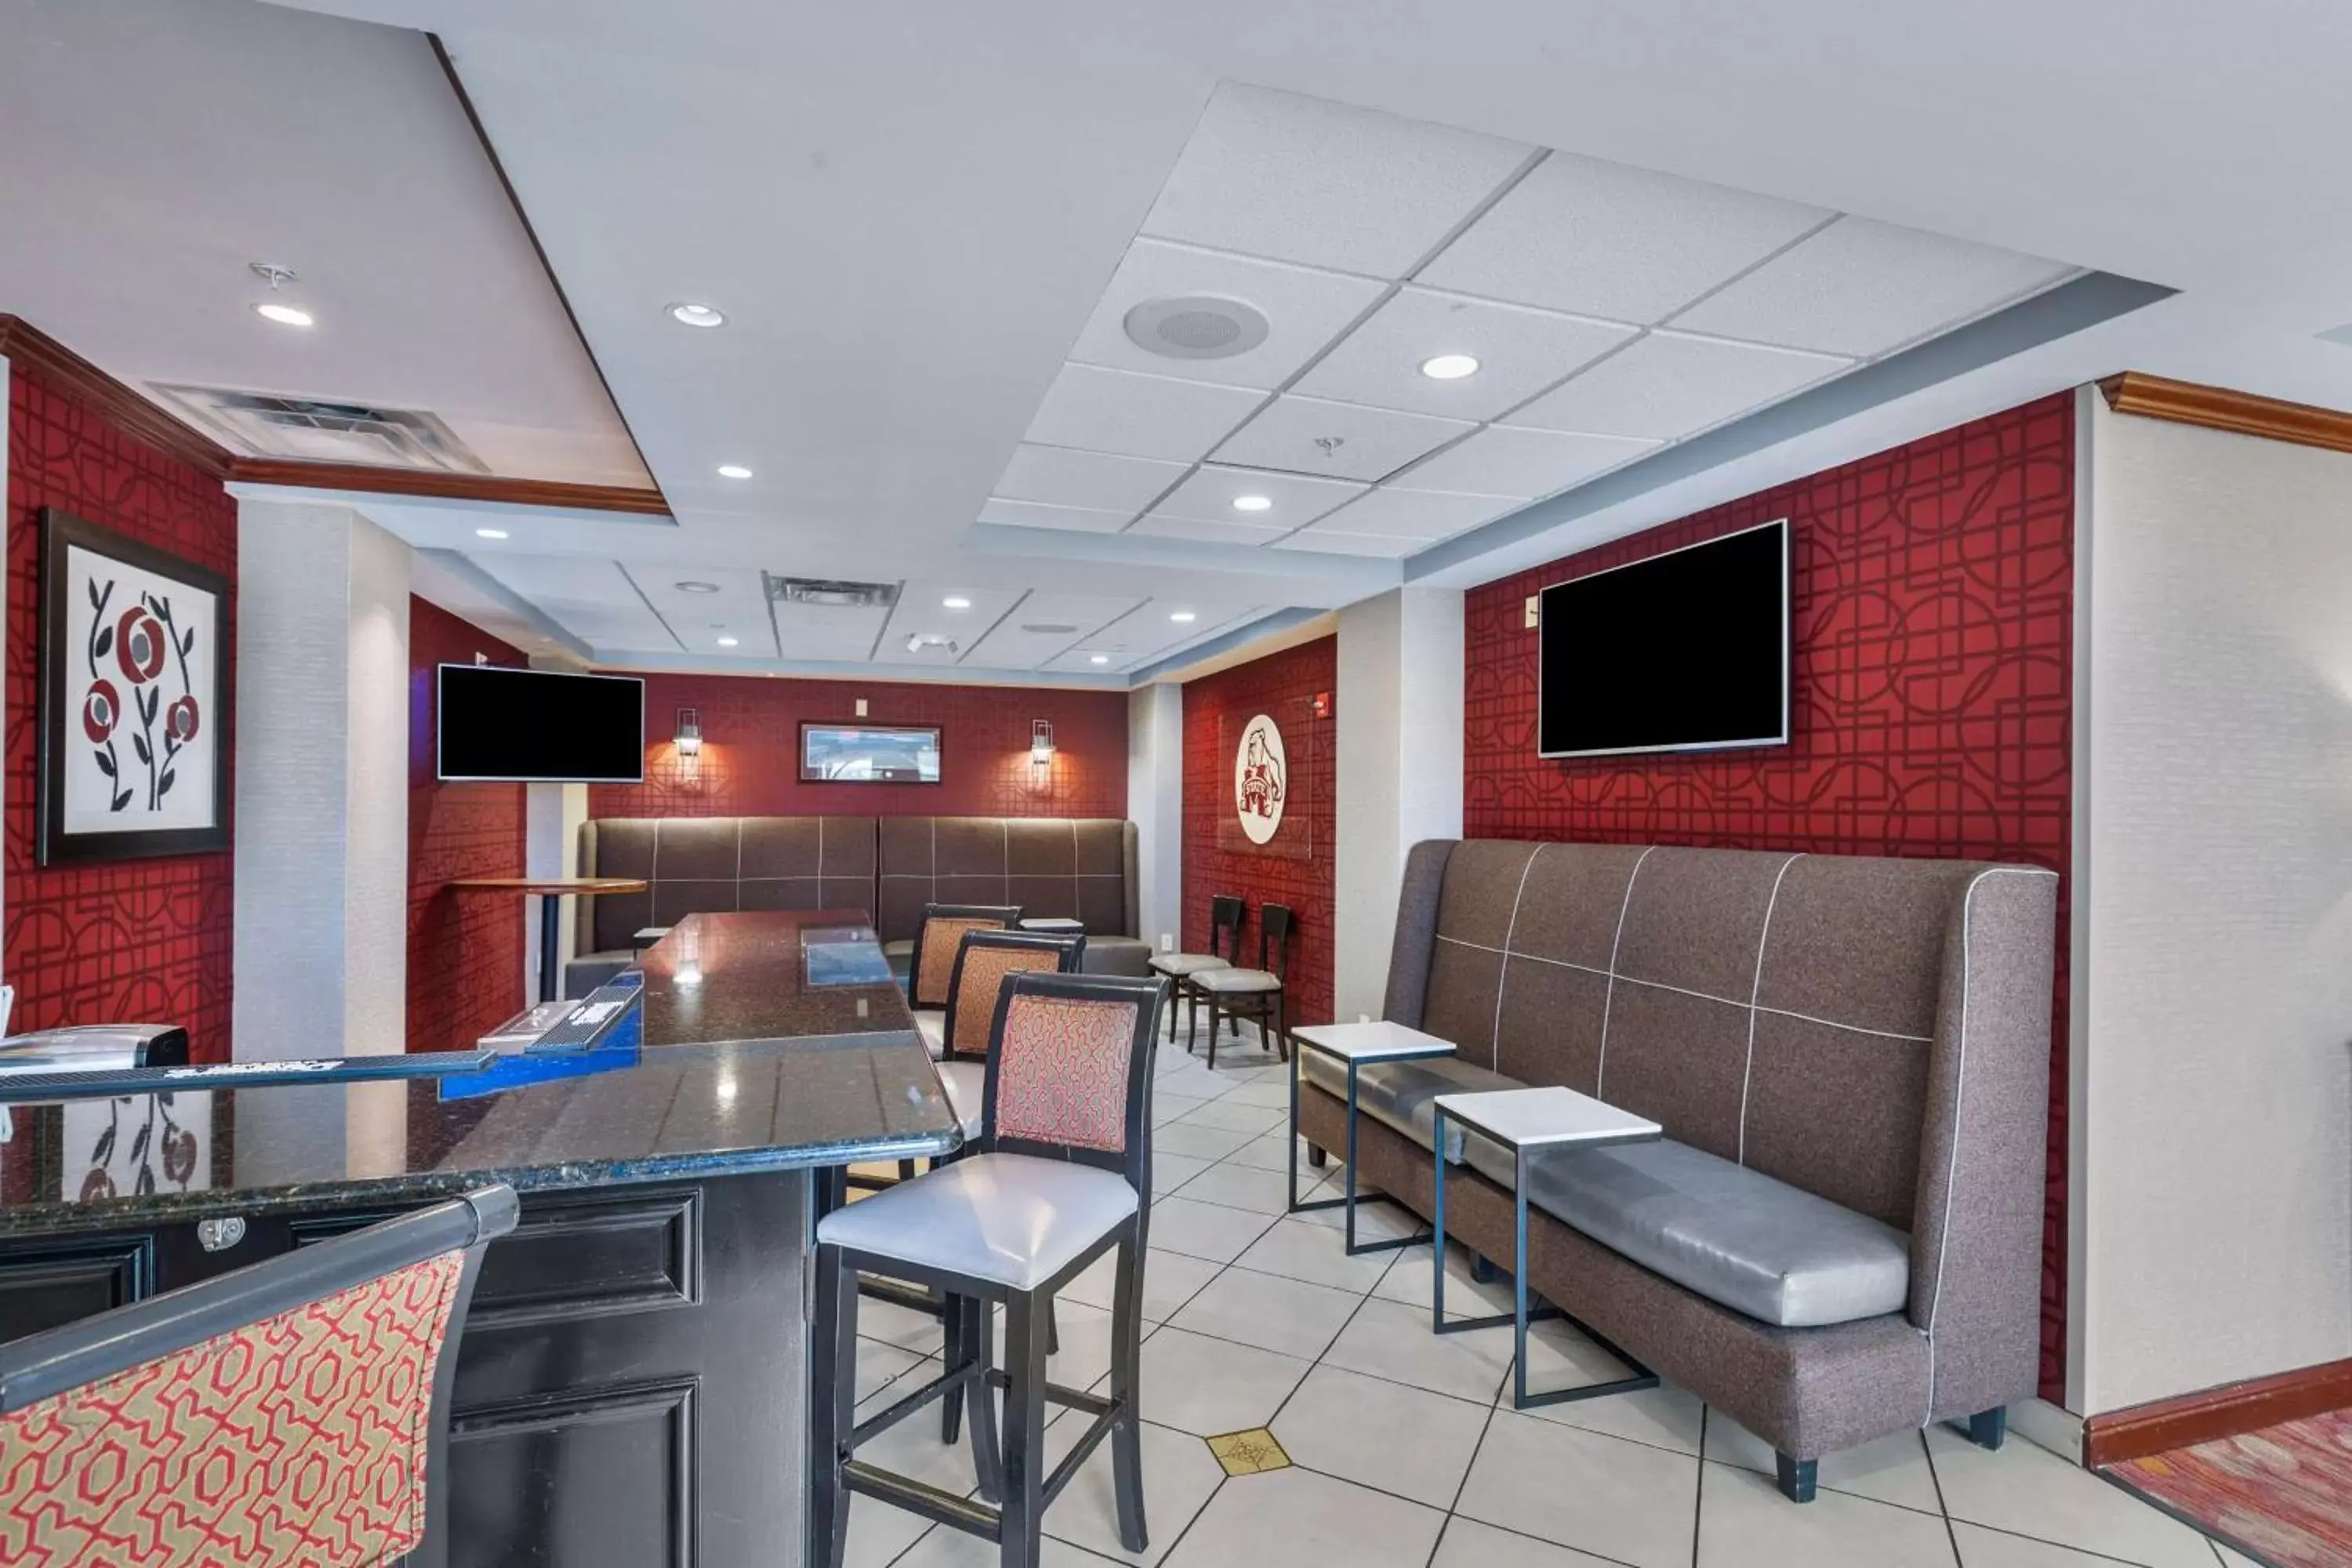 Lounge or bar, Restaurant/Places to Eat in Hilton Garden Inn Starkville